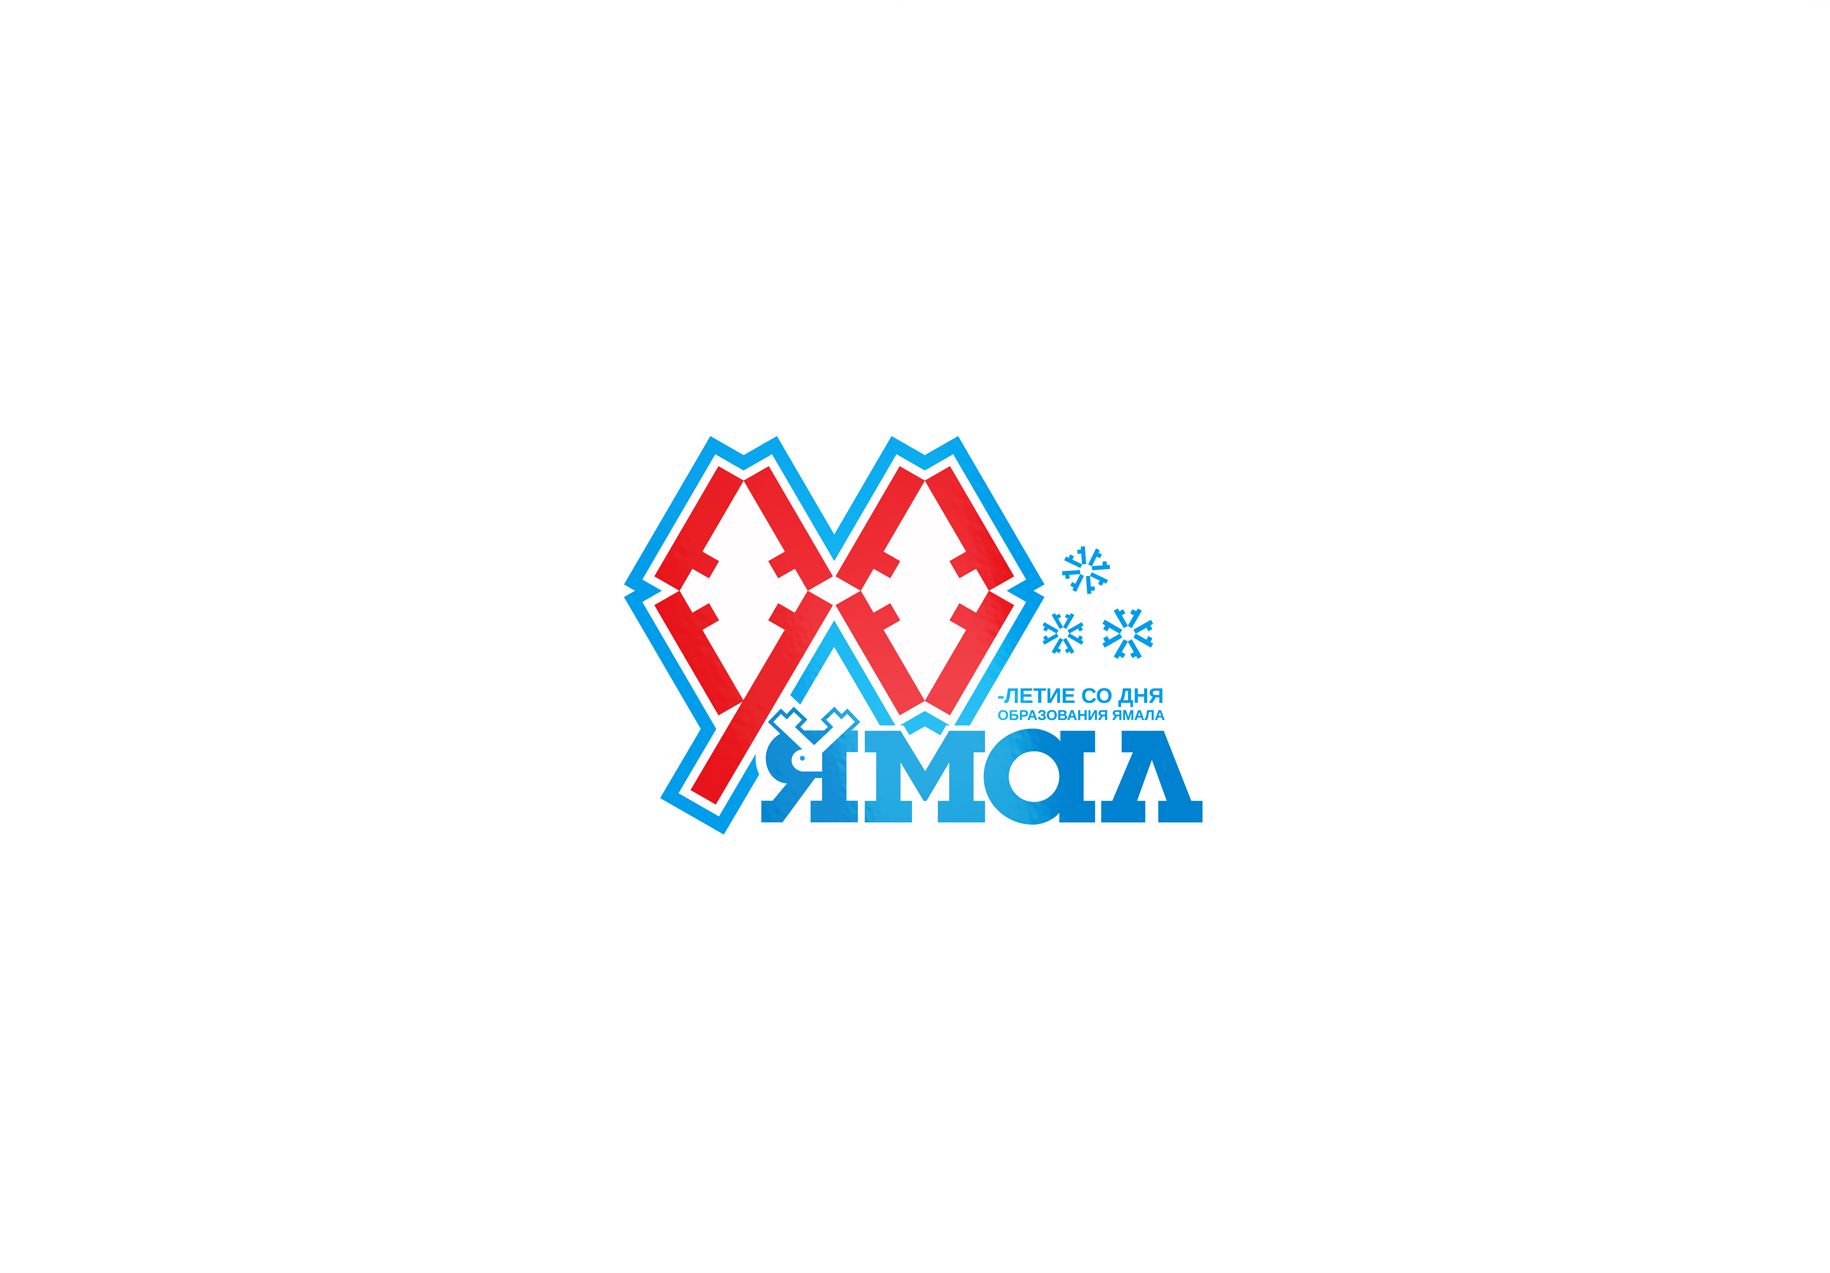 Лого и фирменный стиль для 90-летие со дня образования Ямала - дизайнер LiXoOn